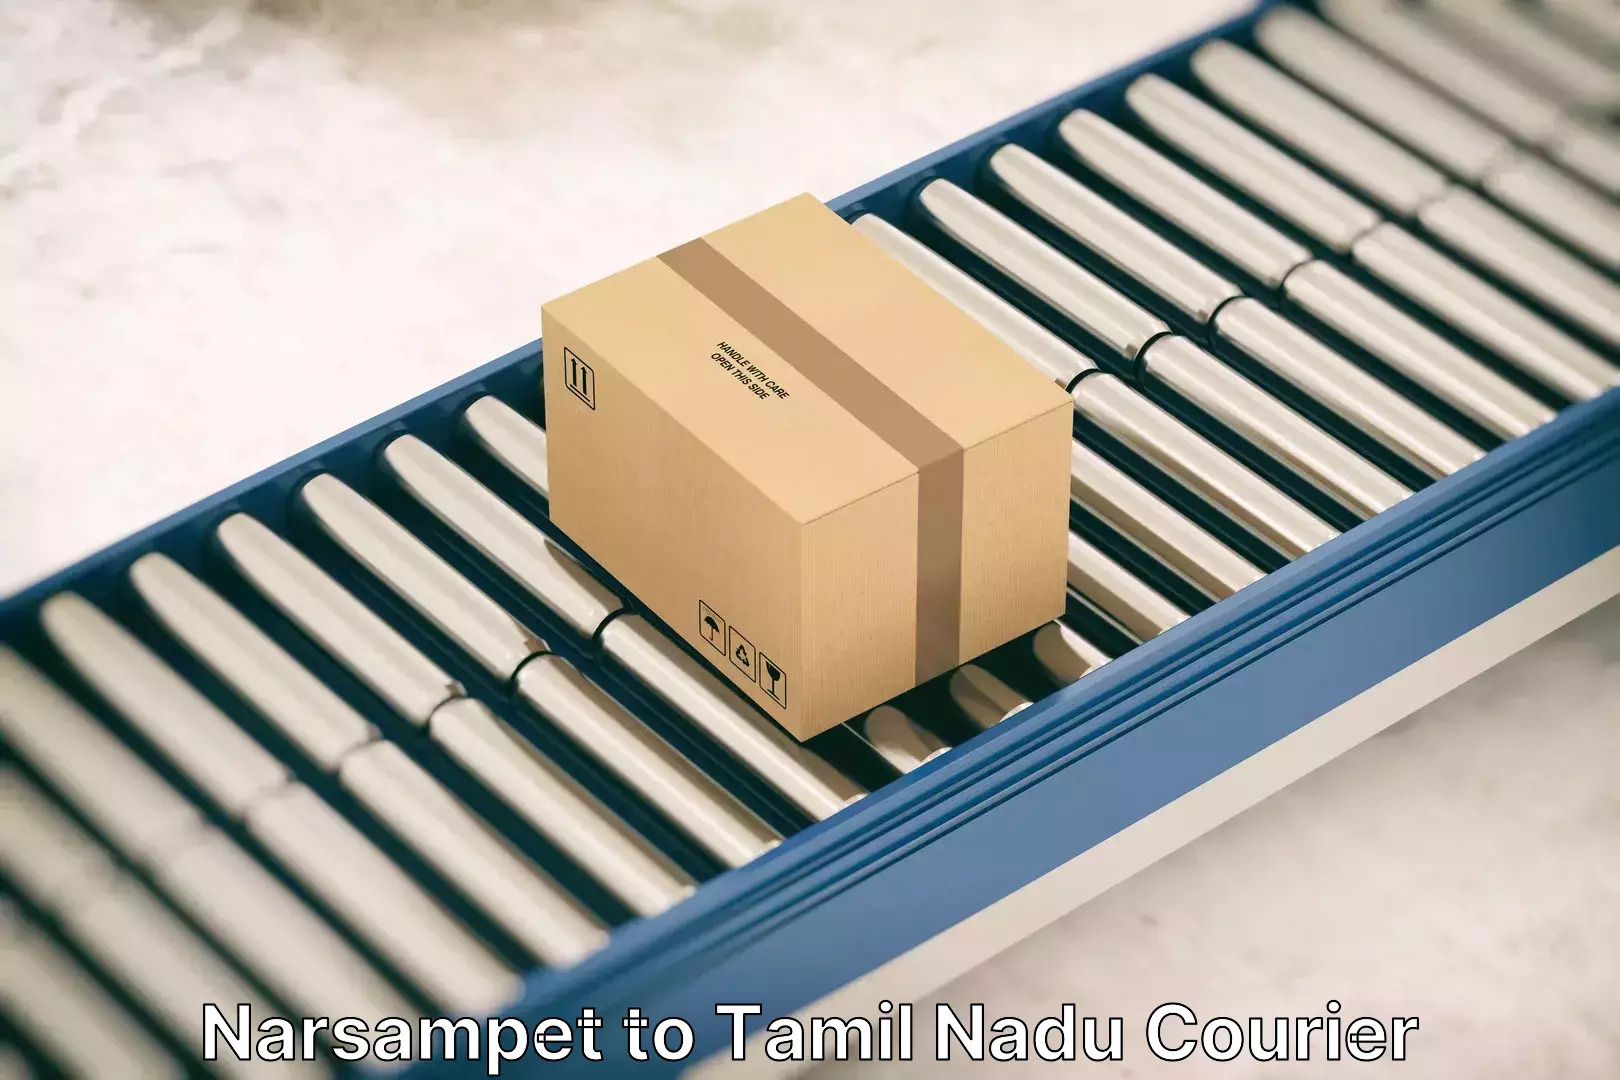 Professional furniture transport Narsampet to Tamil Nadu